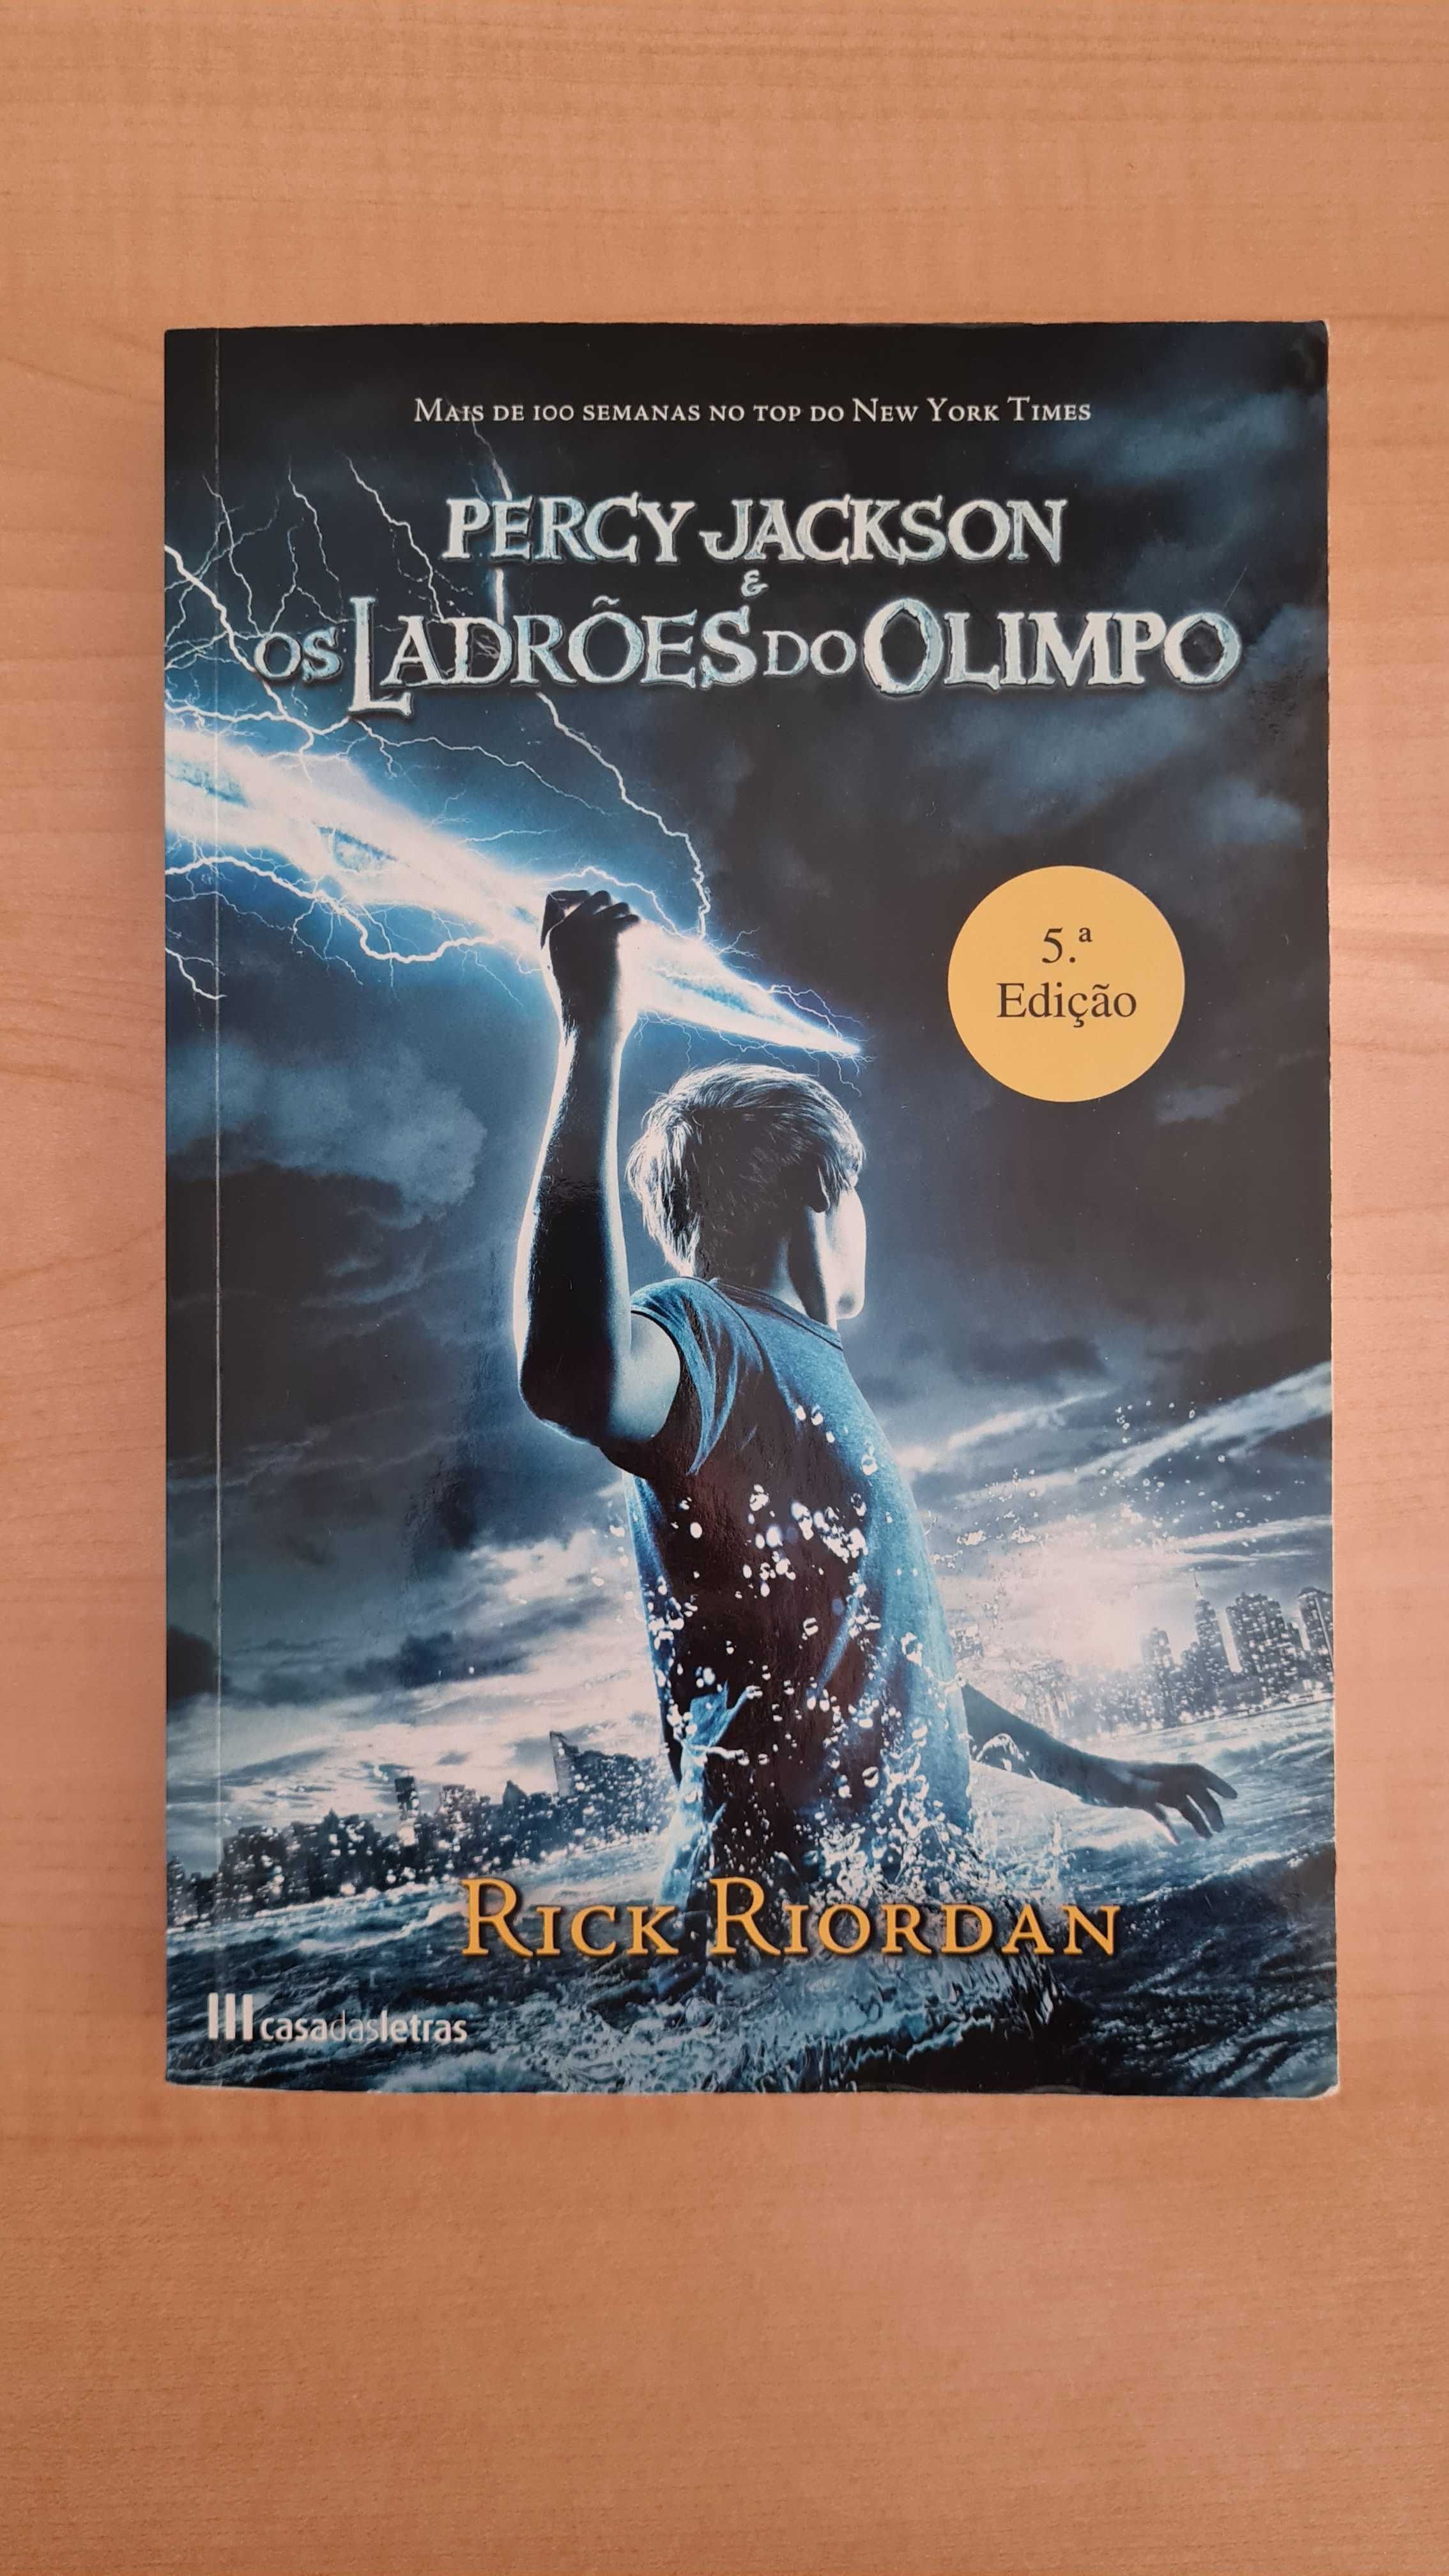 Livro "Percy Jackson e os Ladrões do Olimpo"